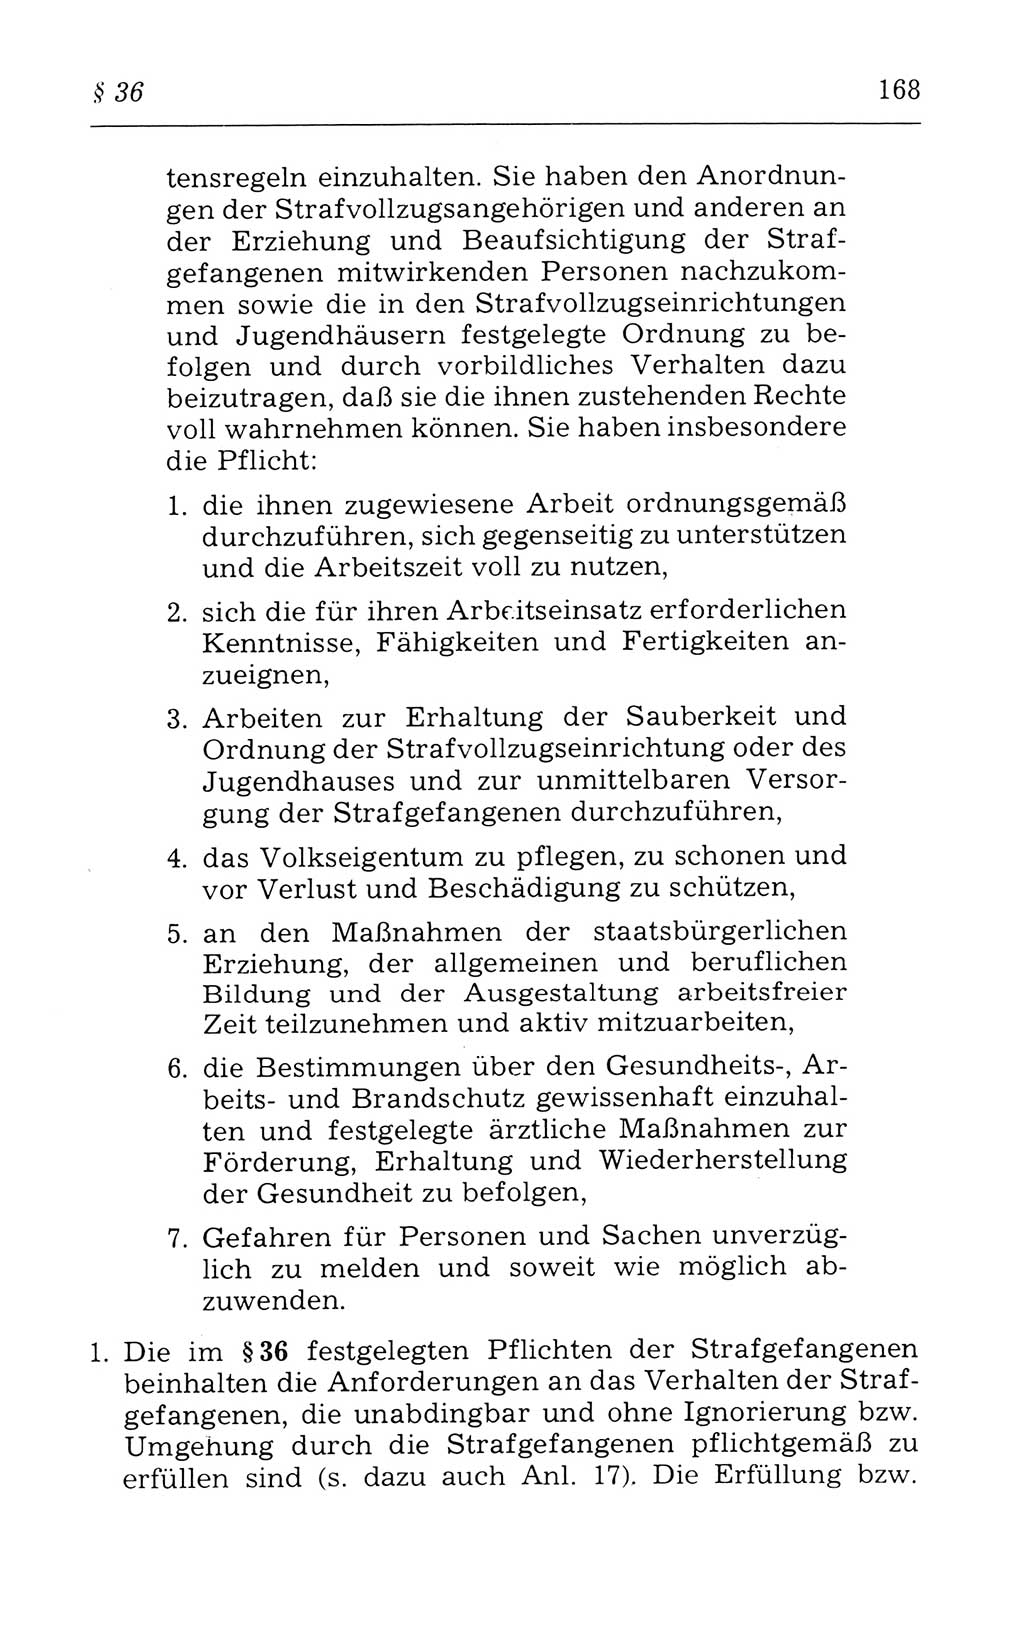 Kommentar zum Strafvollzugsgesetz [(StVG) Deutsche Demokratische Republik (DDR)] 1980, Seite 168 (Komm. StVG DDR 1980, S. 168)